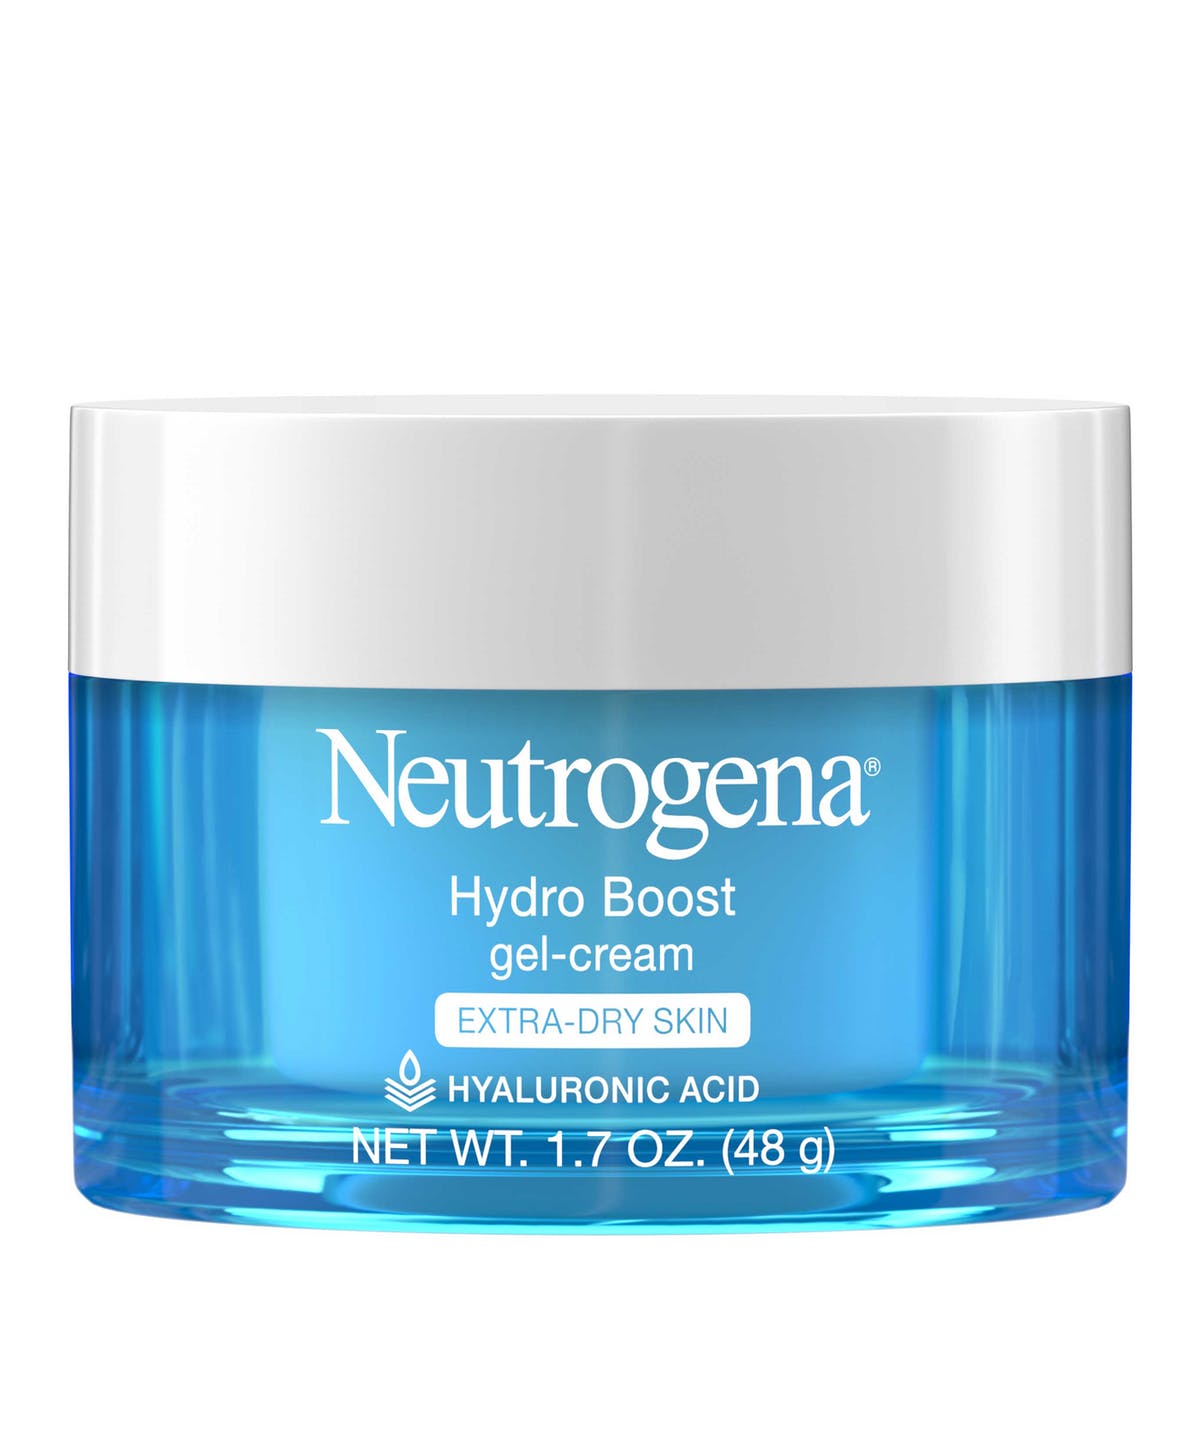 Kem Dưỡng Neutrogena Hydro Boost Gel – Cream Hyaluronic Acid ảnh 2